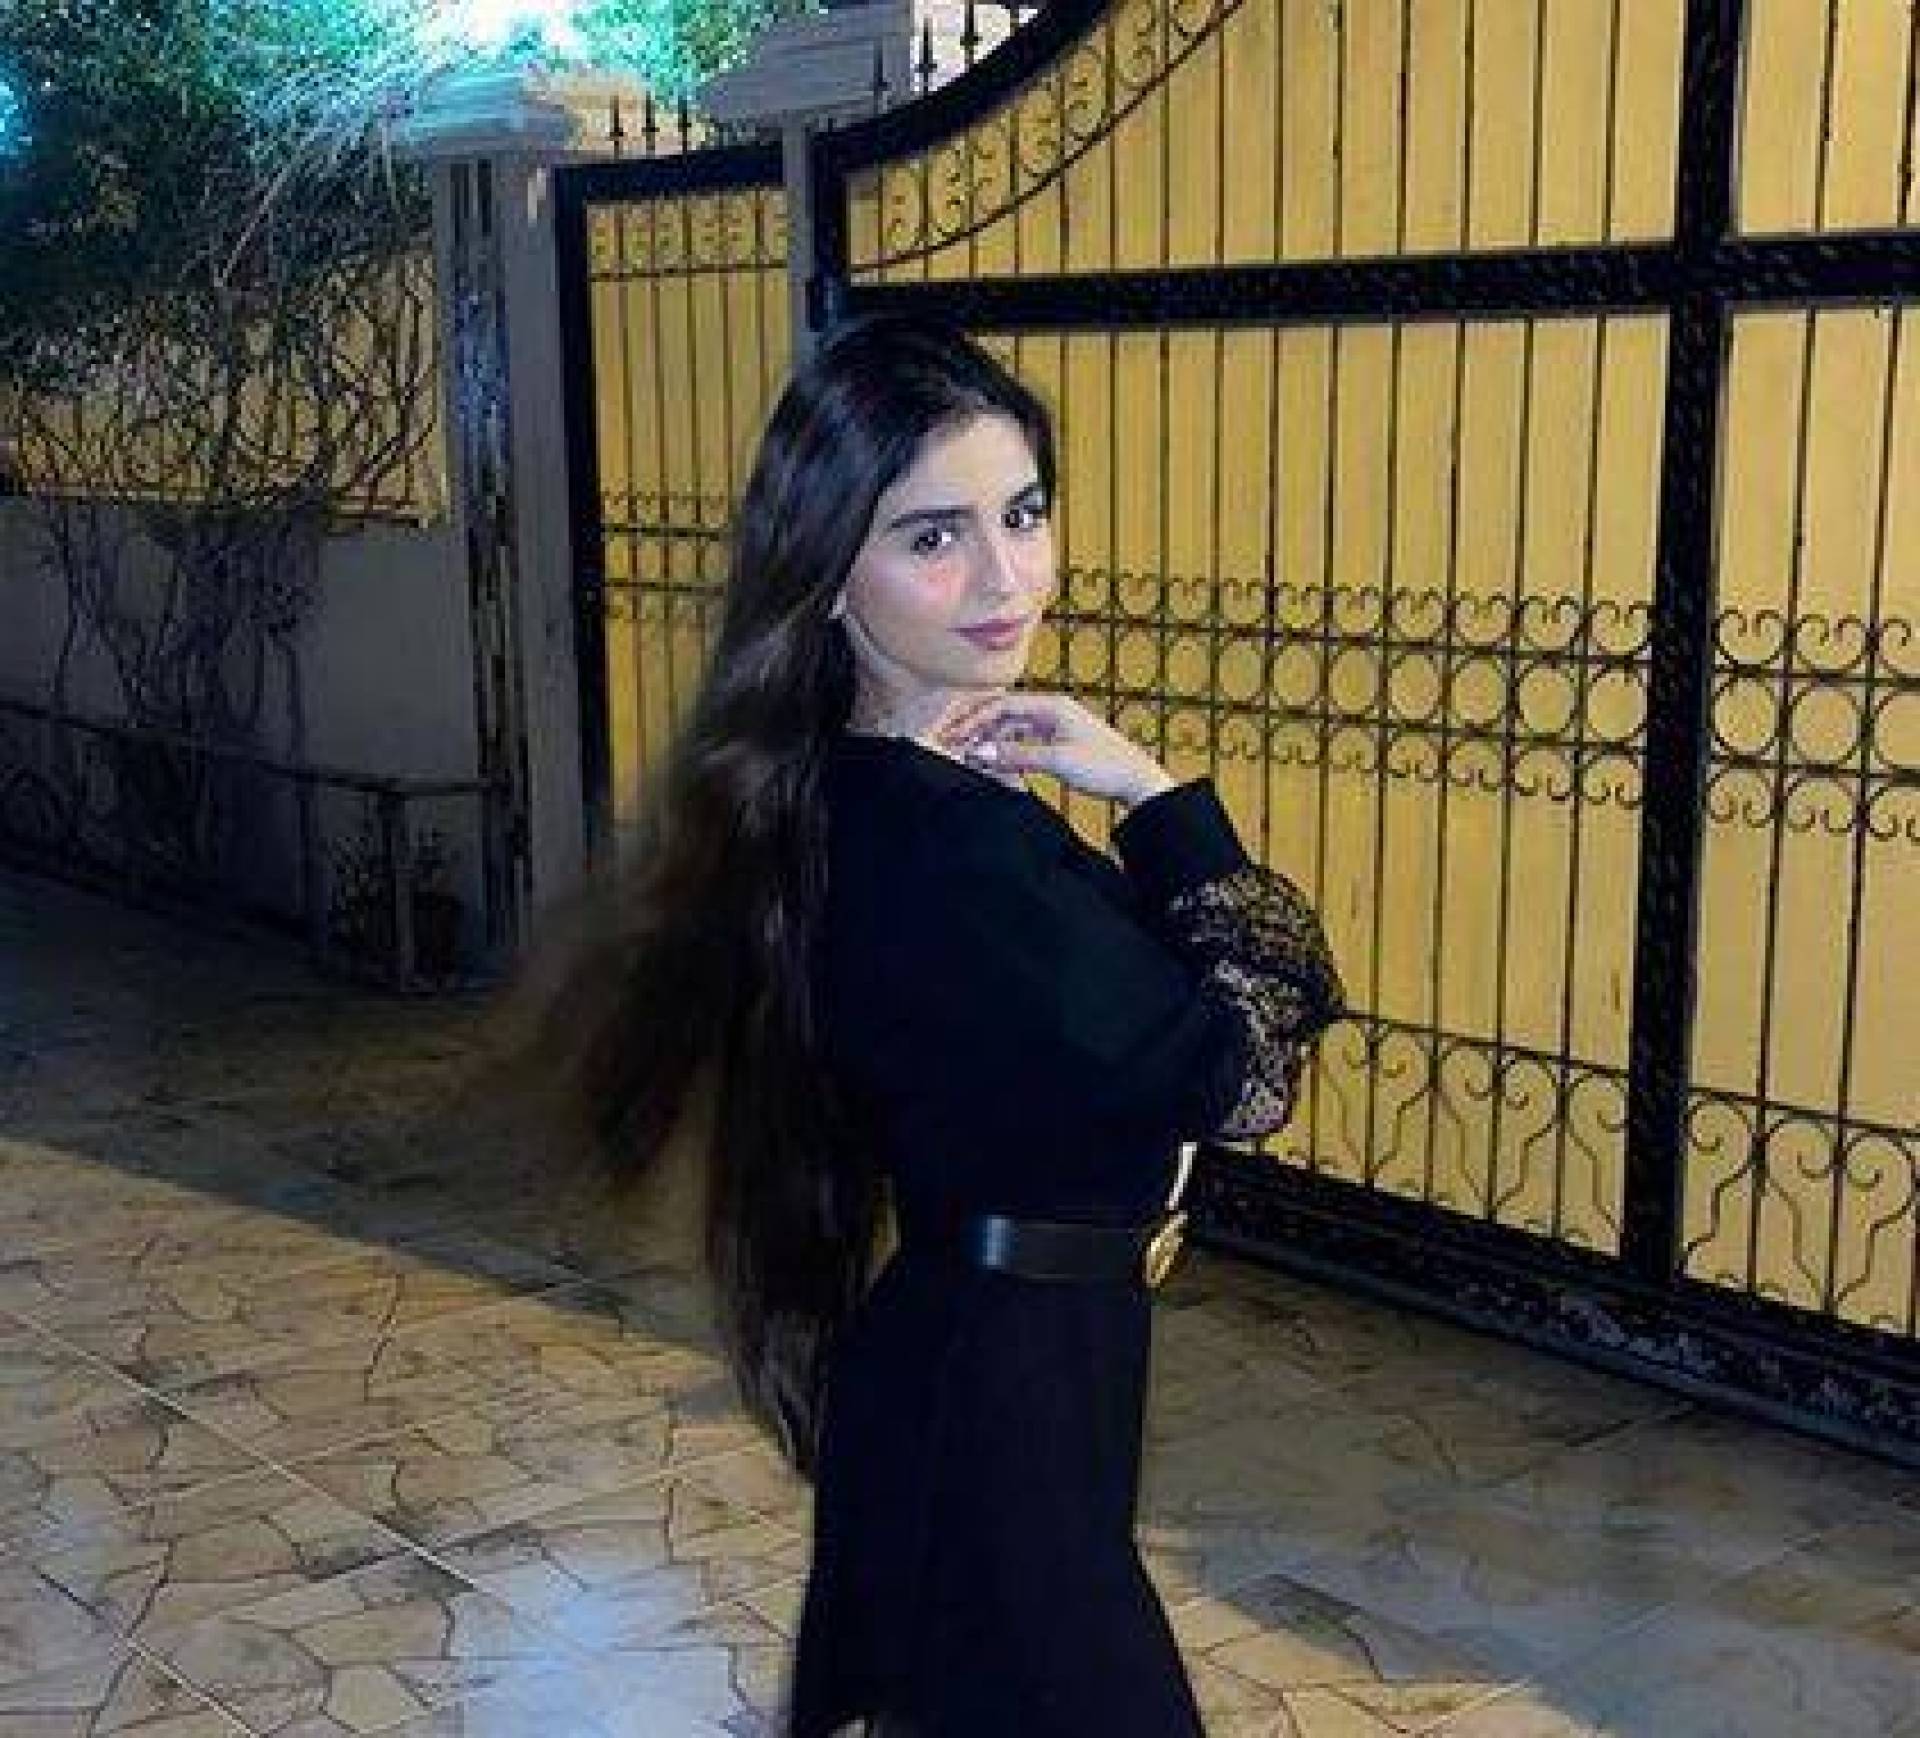 بالفيديو - حلا الترك تحتفل بطريقتها بعد تخرجها من الثانوية   